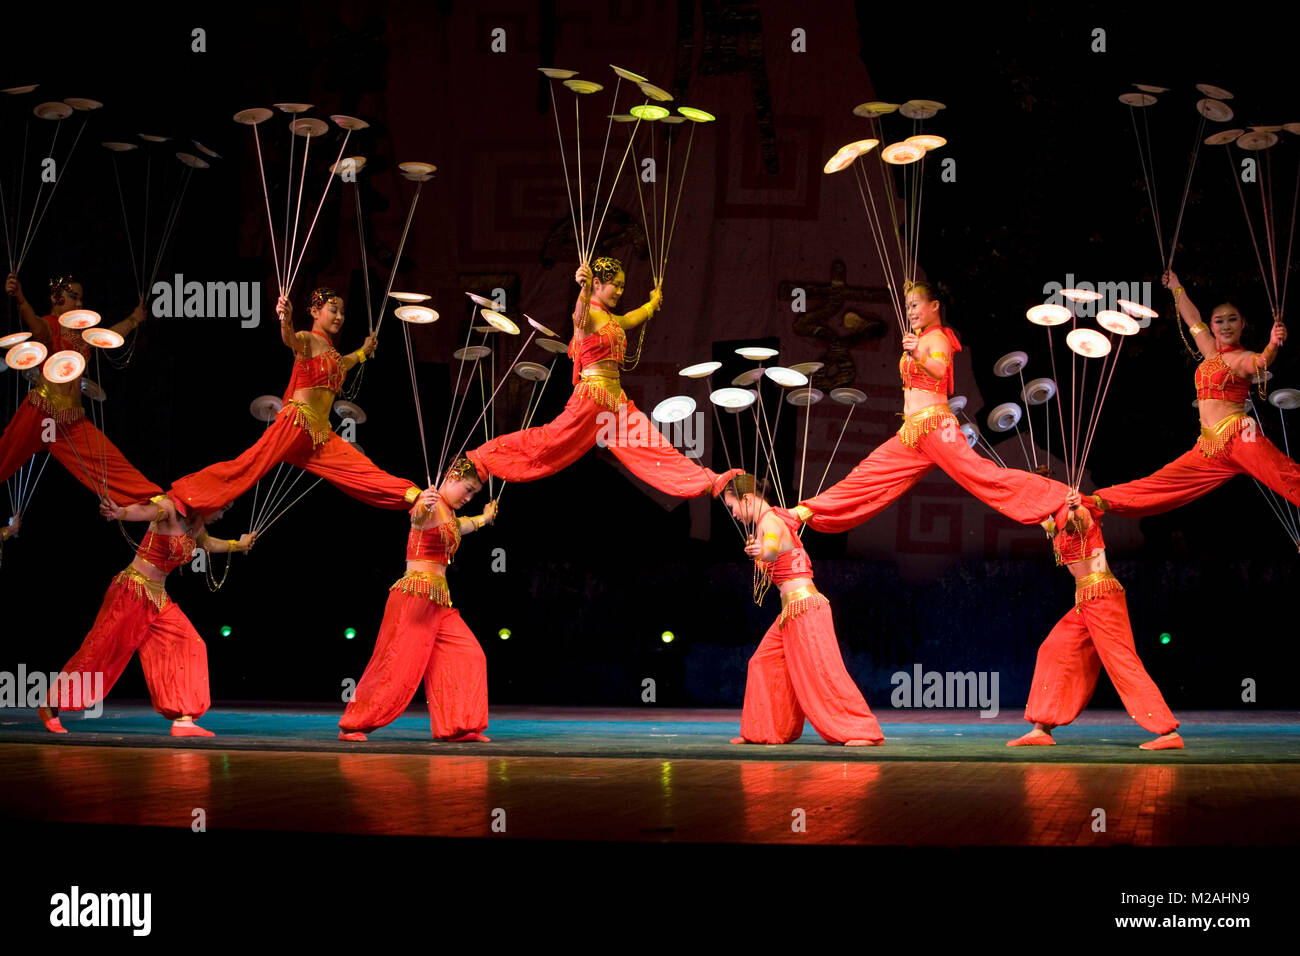 Cina. Pechino. Teatro di Chaoyang. Acrobati eseguendo con le piastre sul palco. Foto Stock